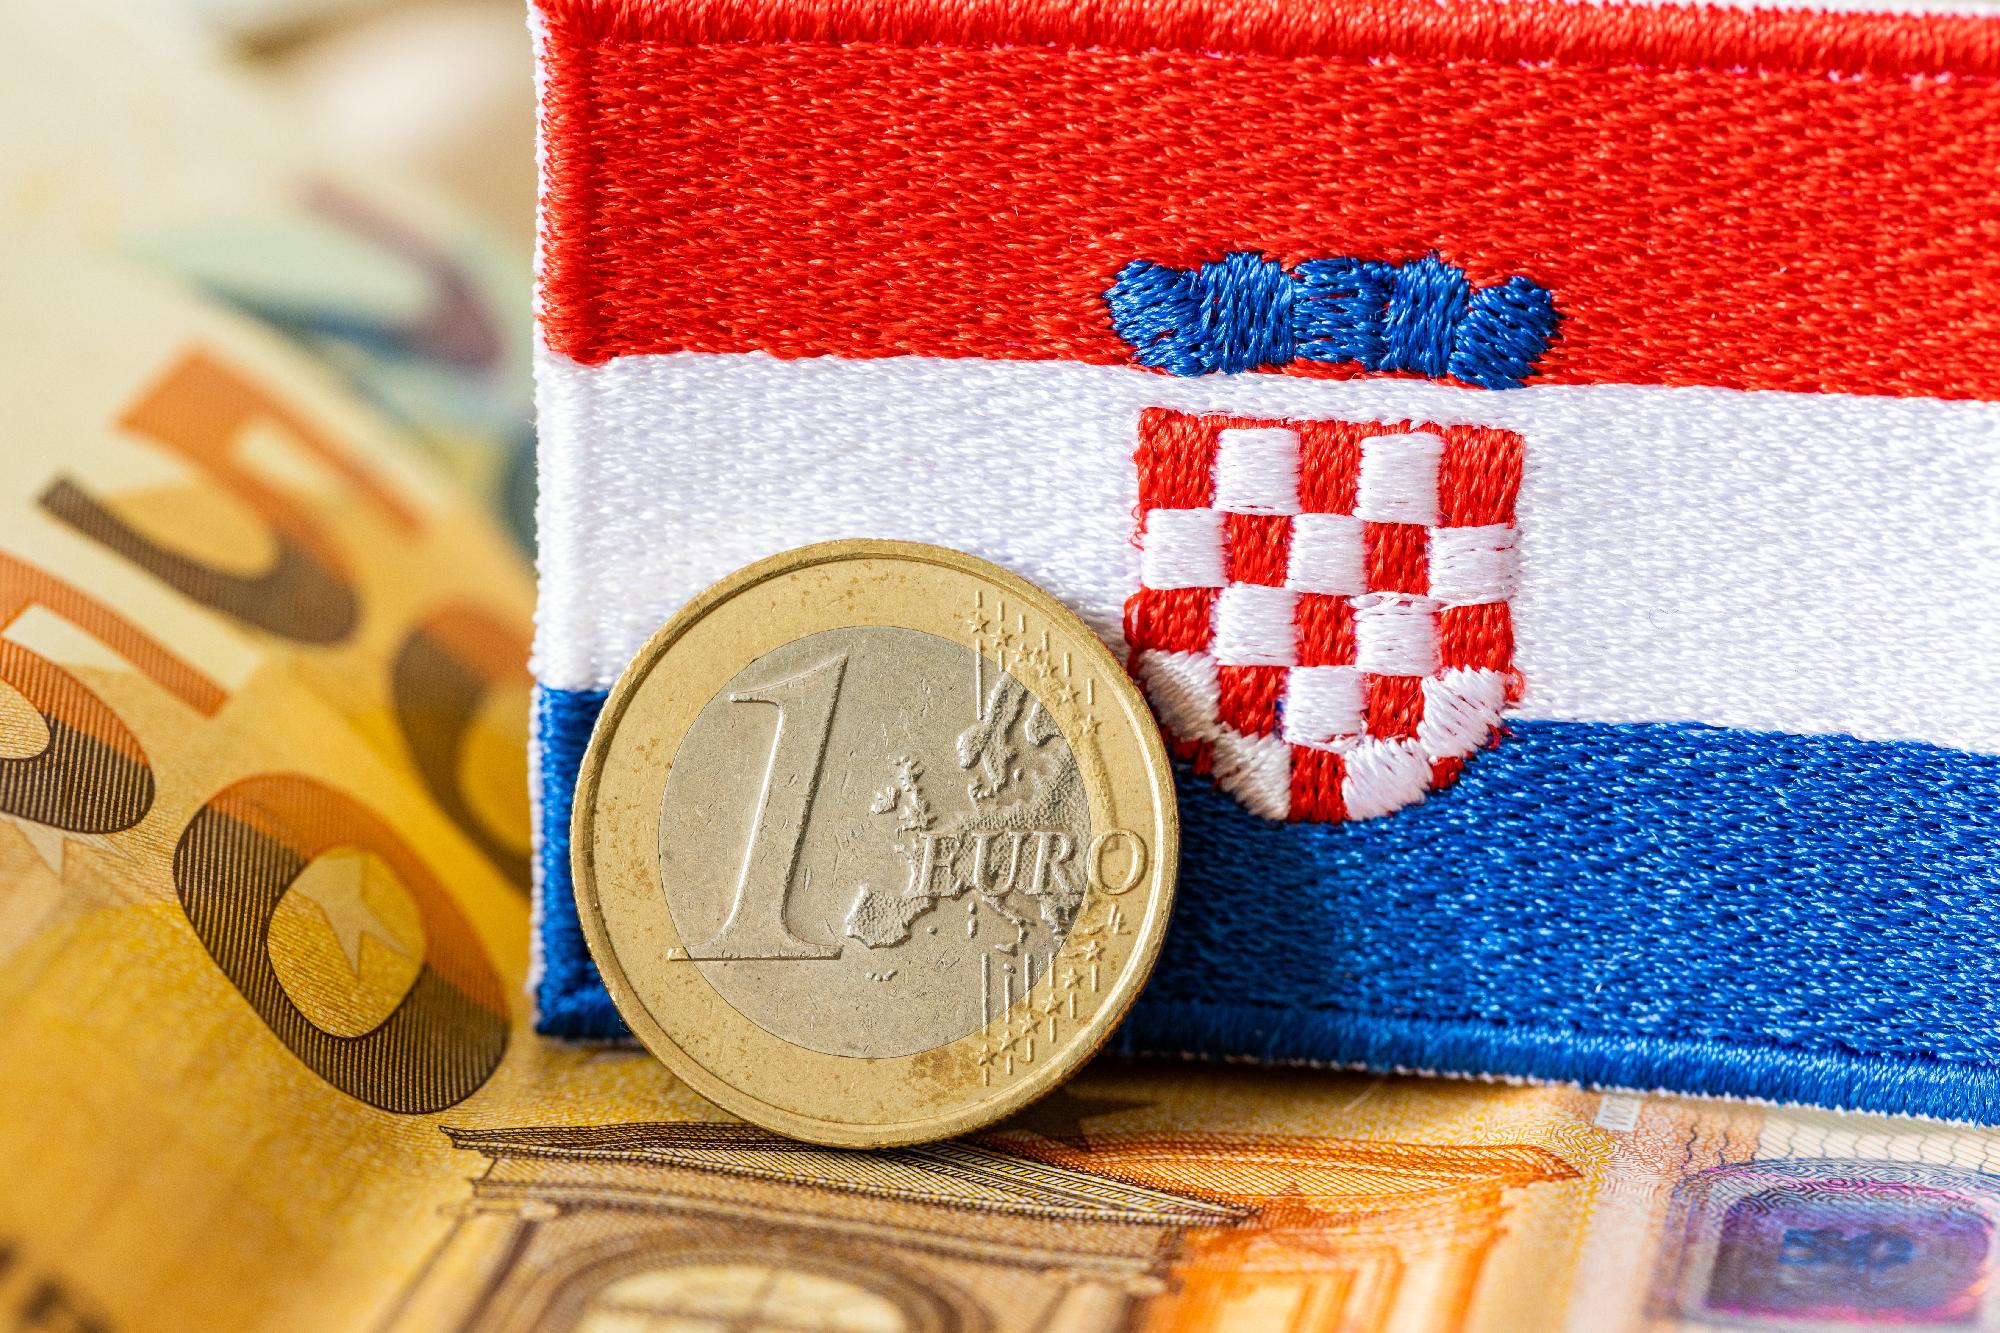 Vasárnaptól már csak euróban lehet fizetni Horvátországban